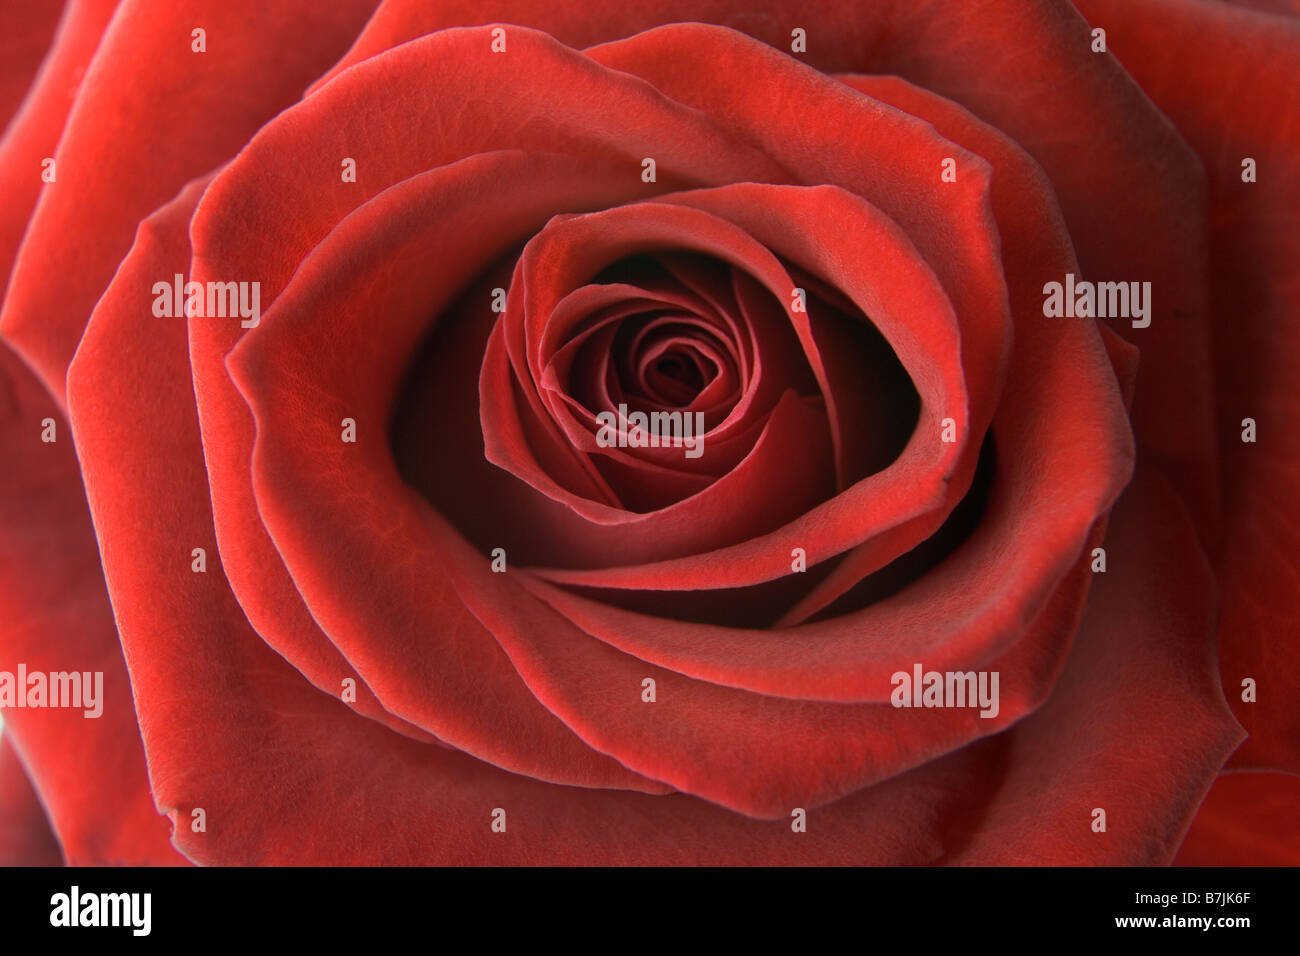 Dettaglio di una rosa rossa Foto Stock